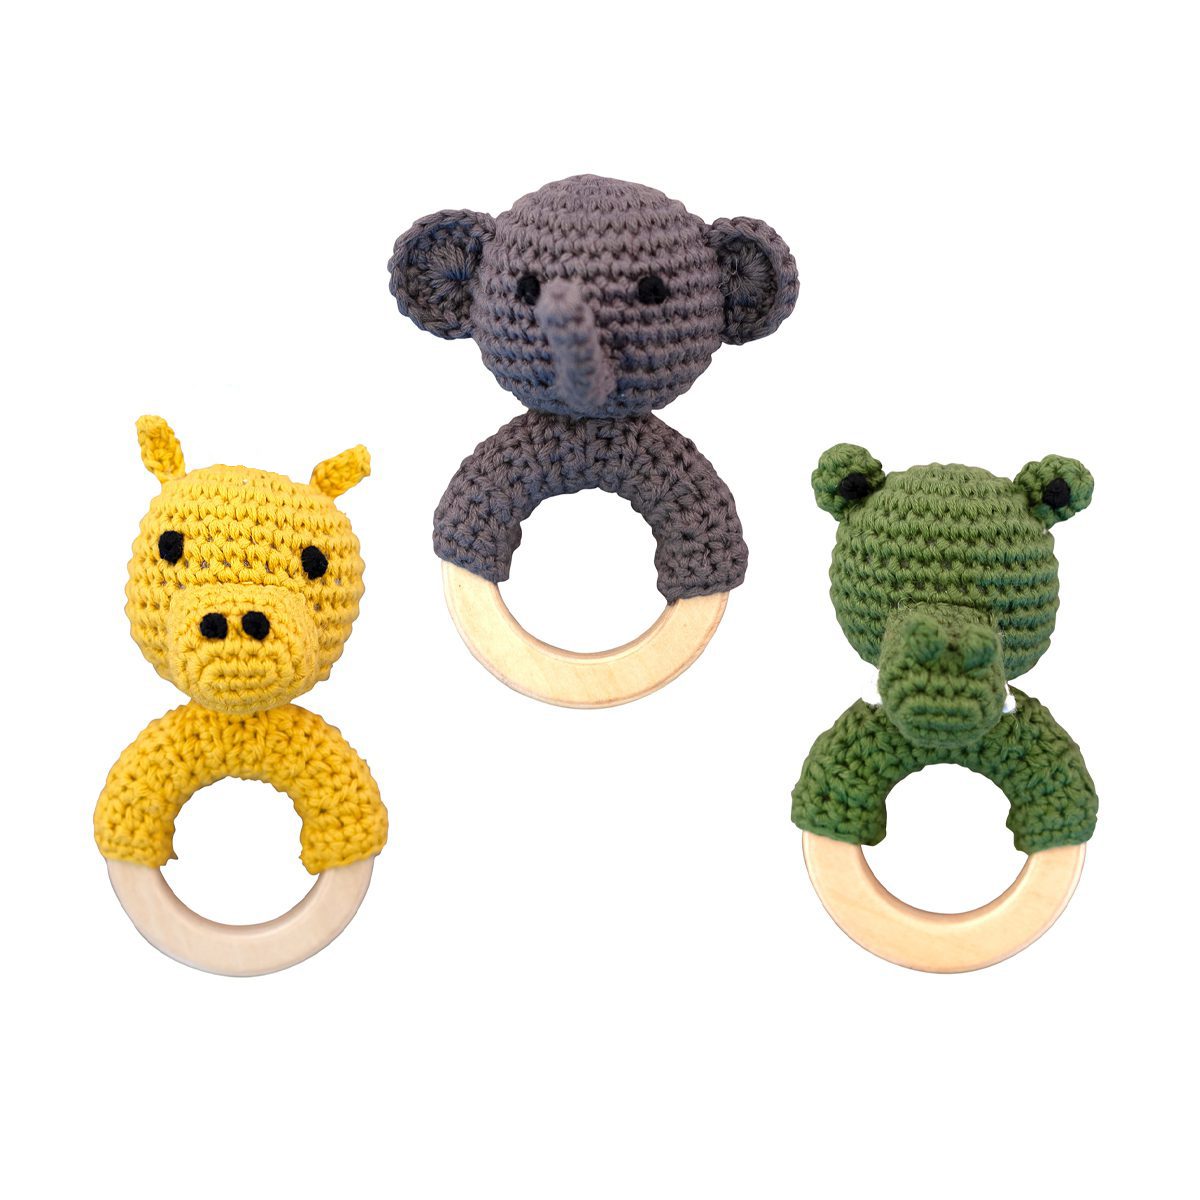 Handgemachte Häkelrasseln in 3 Tiermotiven: Nilpferd, Elefant und Krokodil. Einzeln verpackt in einer schönen Geschenktasche aus Baumwolle.